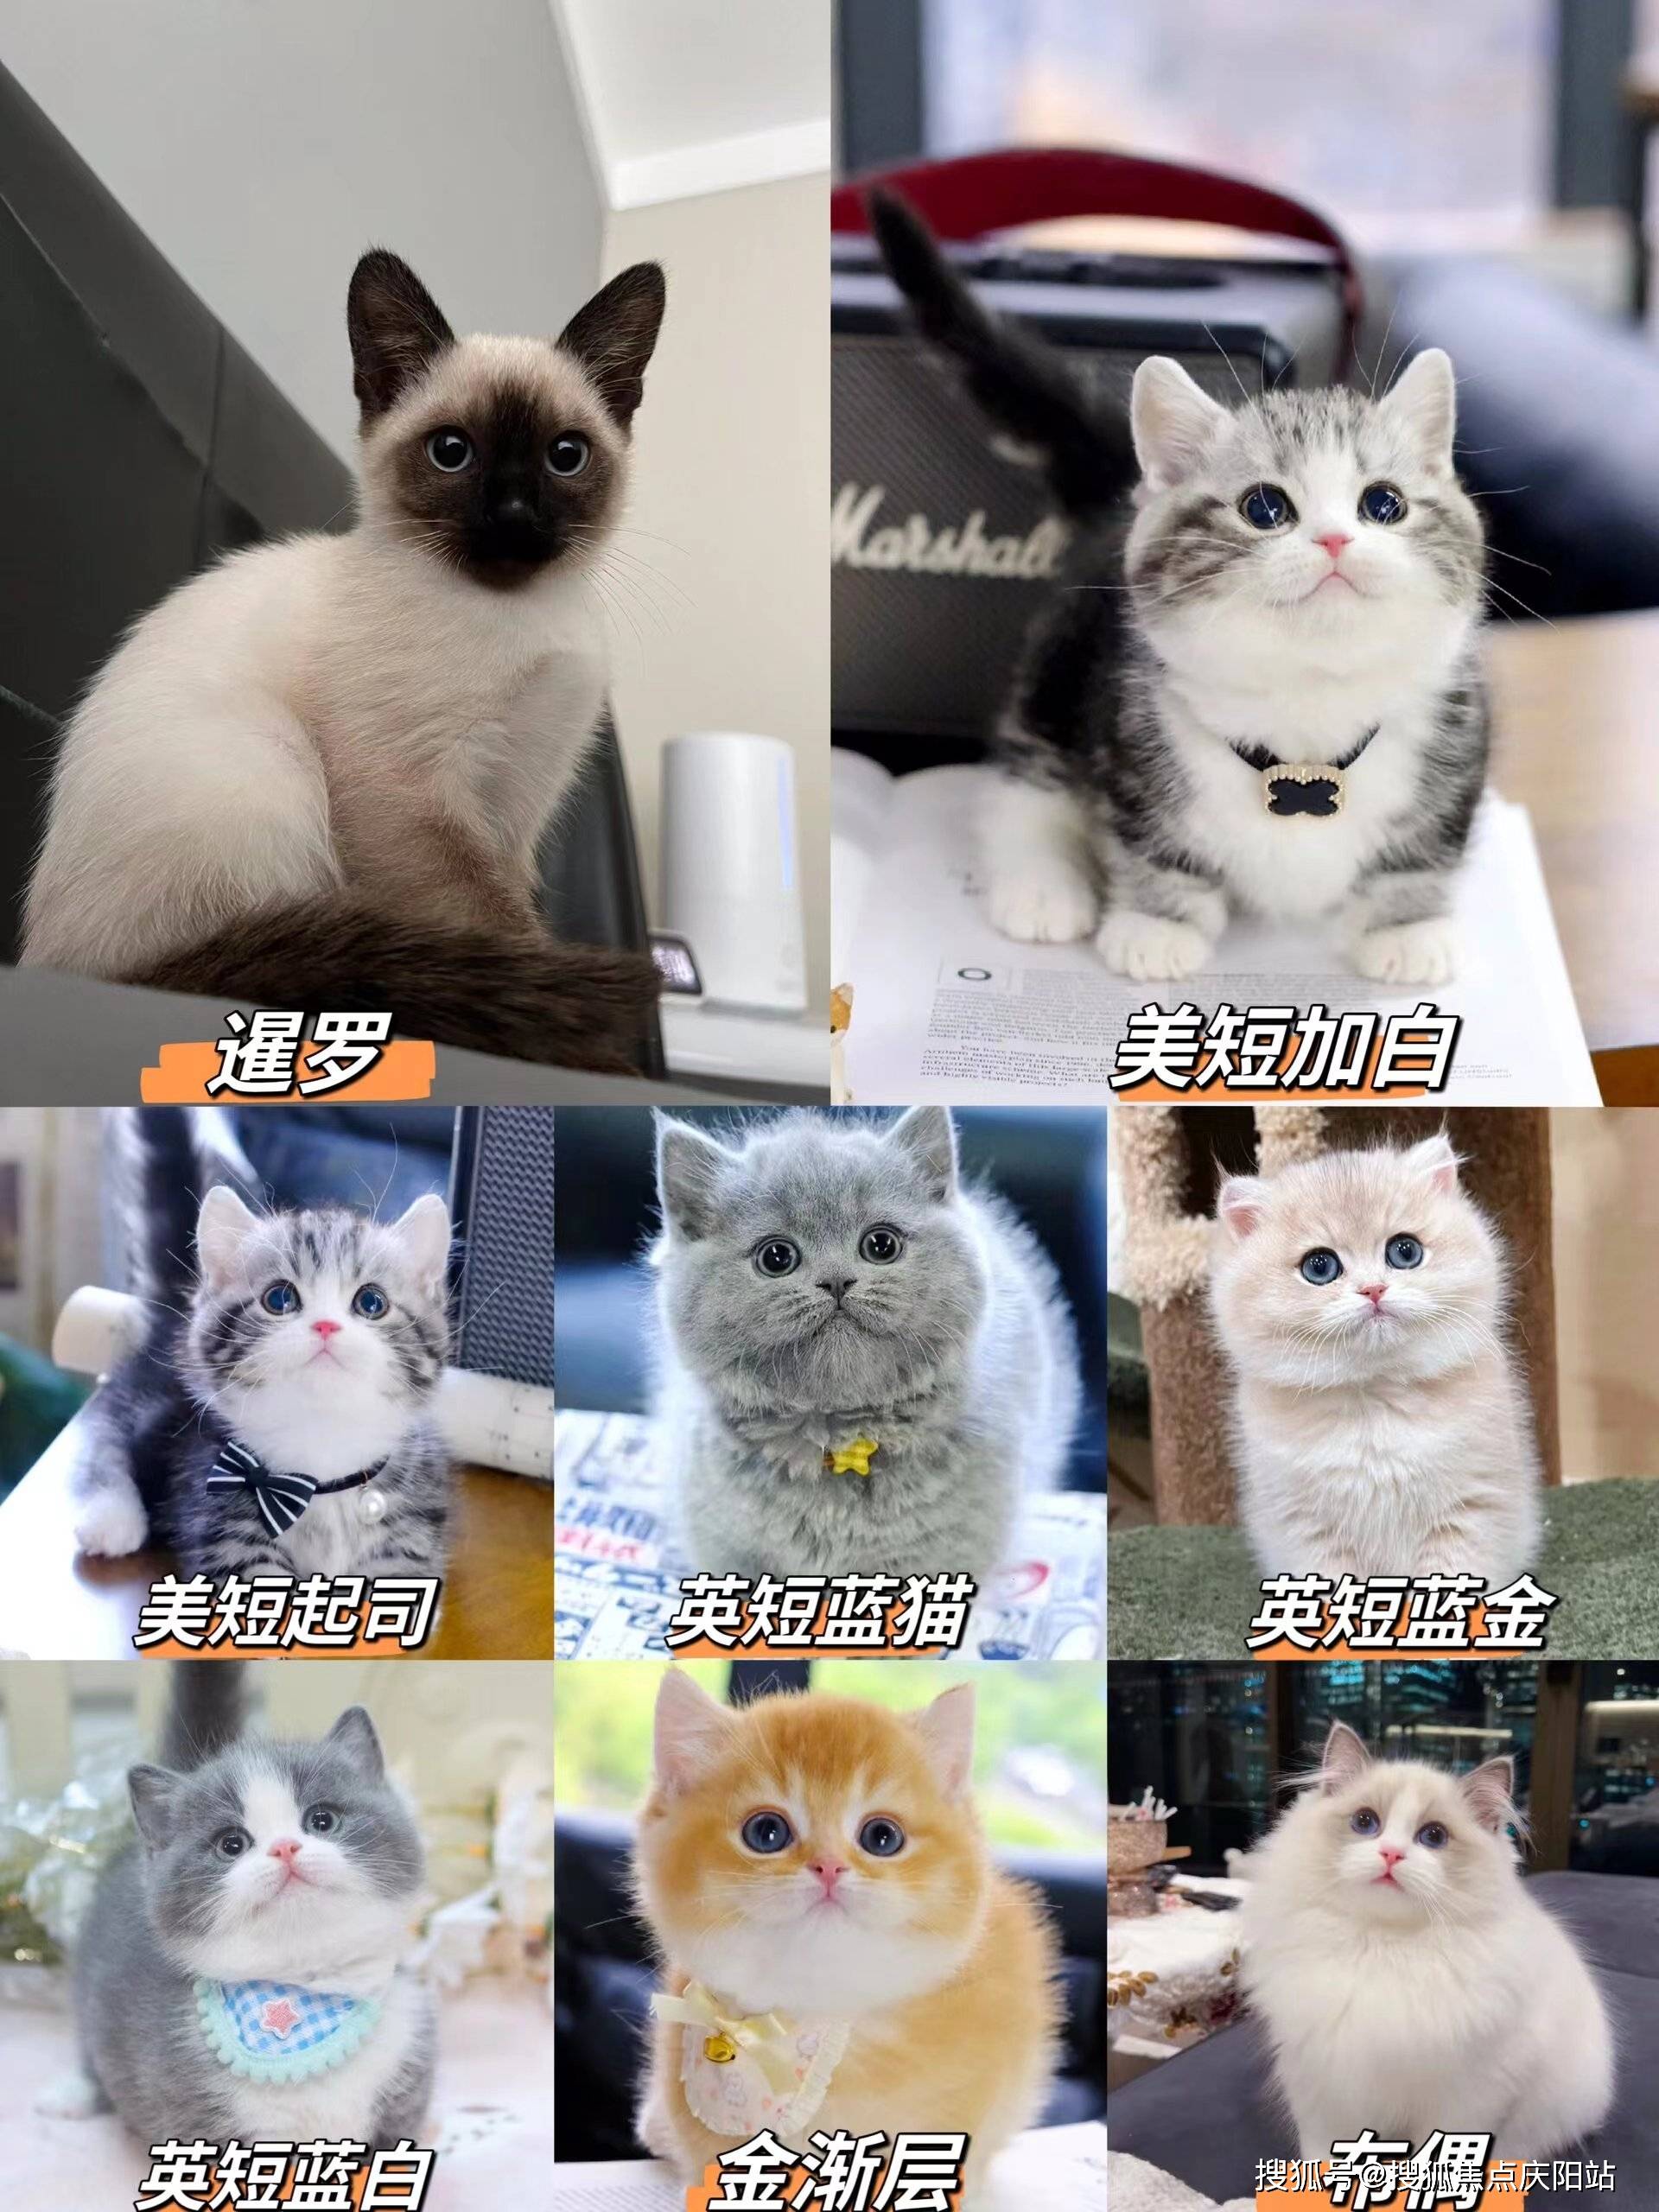 猫首页网站(南京雨花台区)哪家宠物店有卖金渐层猫的